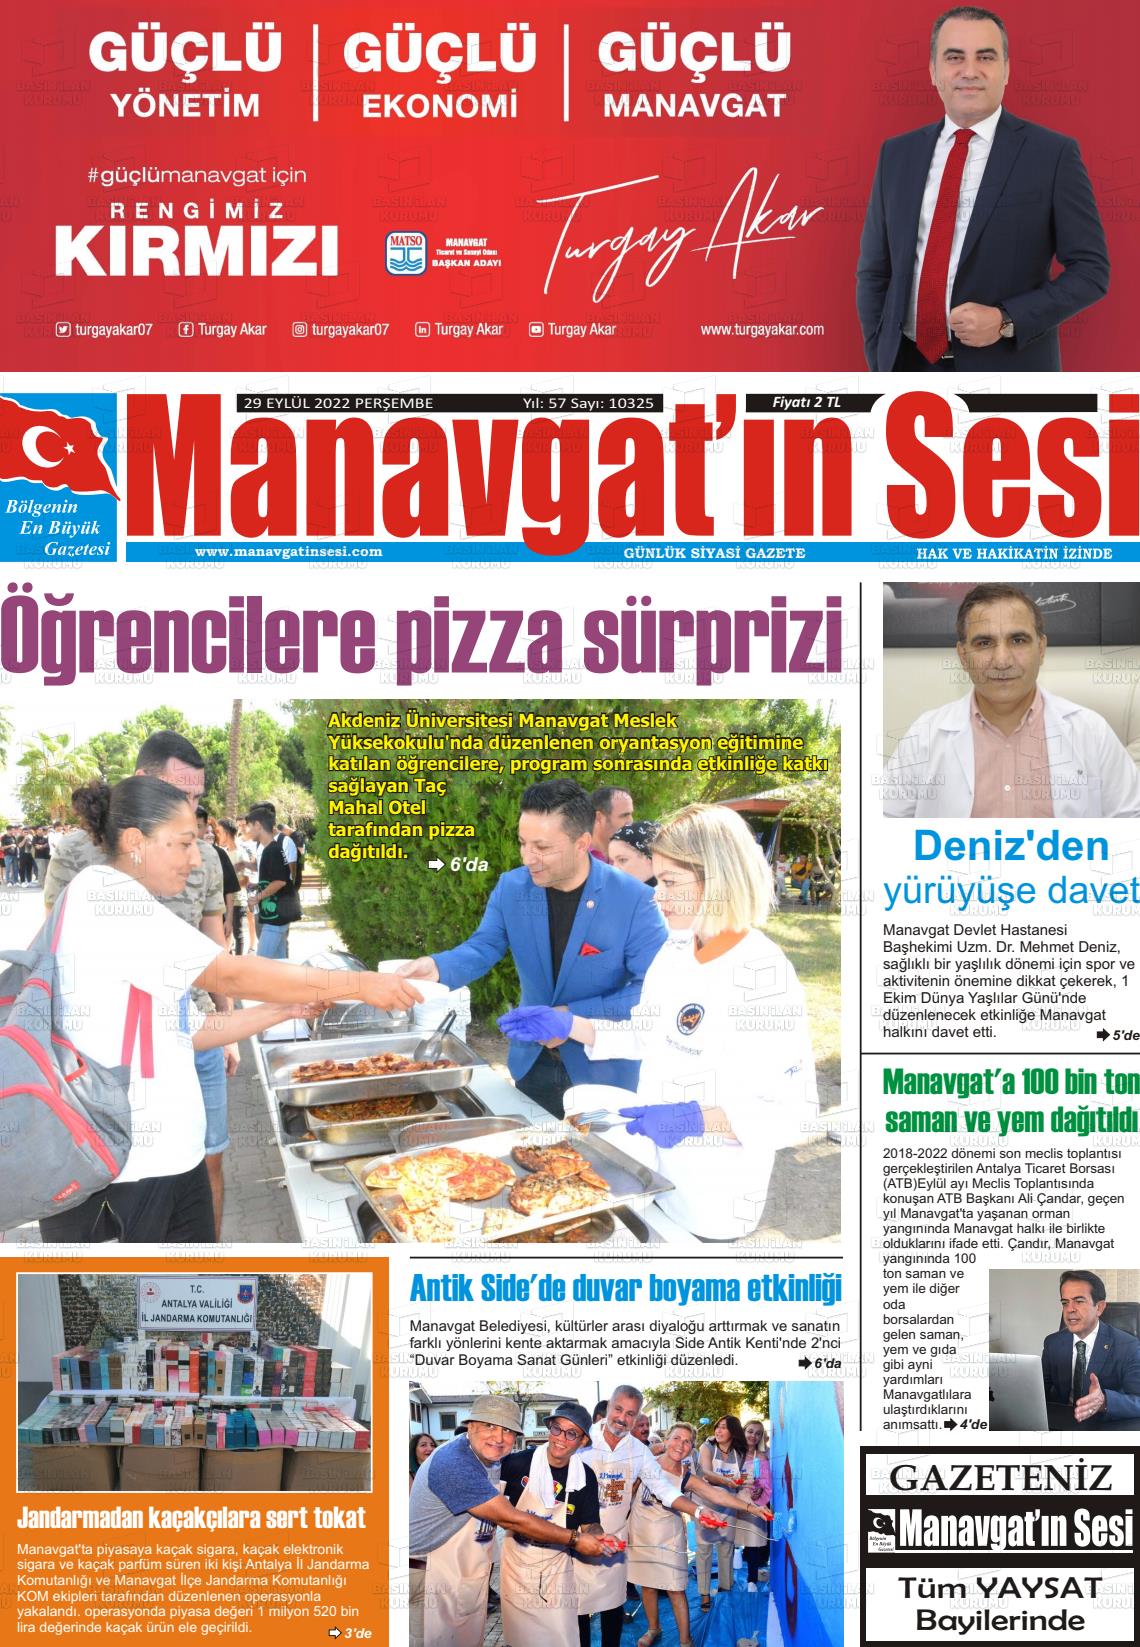 29 Eylül 2022 Manavgat'ın Sesi Gazete Manşeti